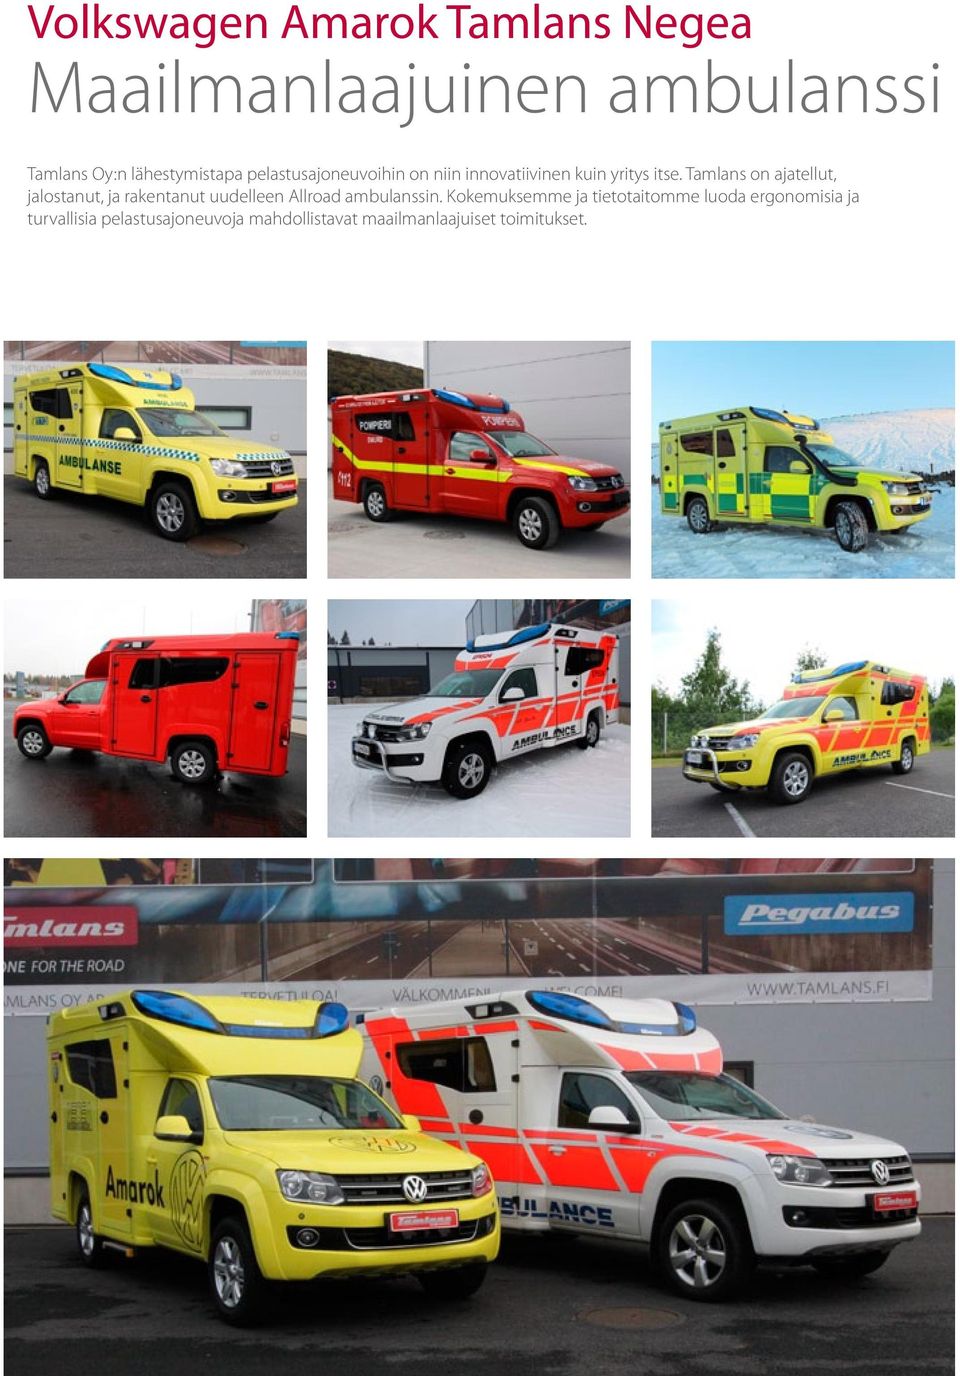 Tamlans on ajatellut, jalostanut, ja rakentanut uudelleen Allroad ambulanssin.